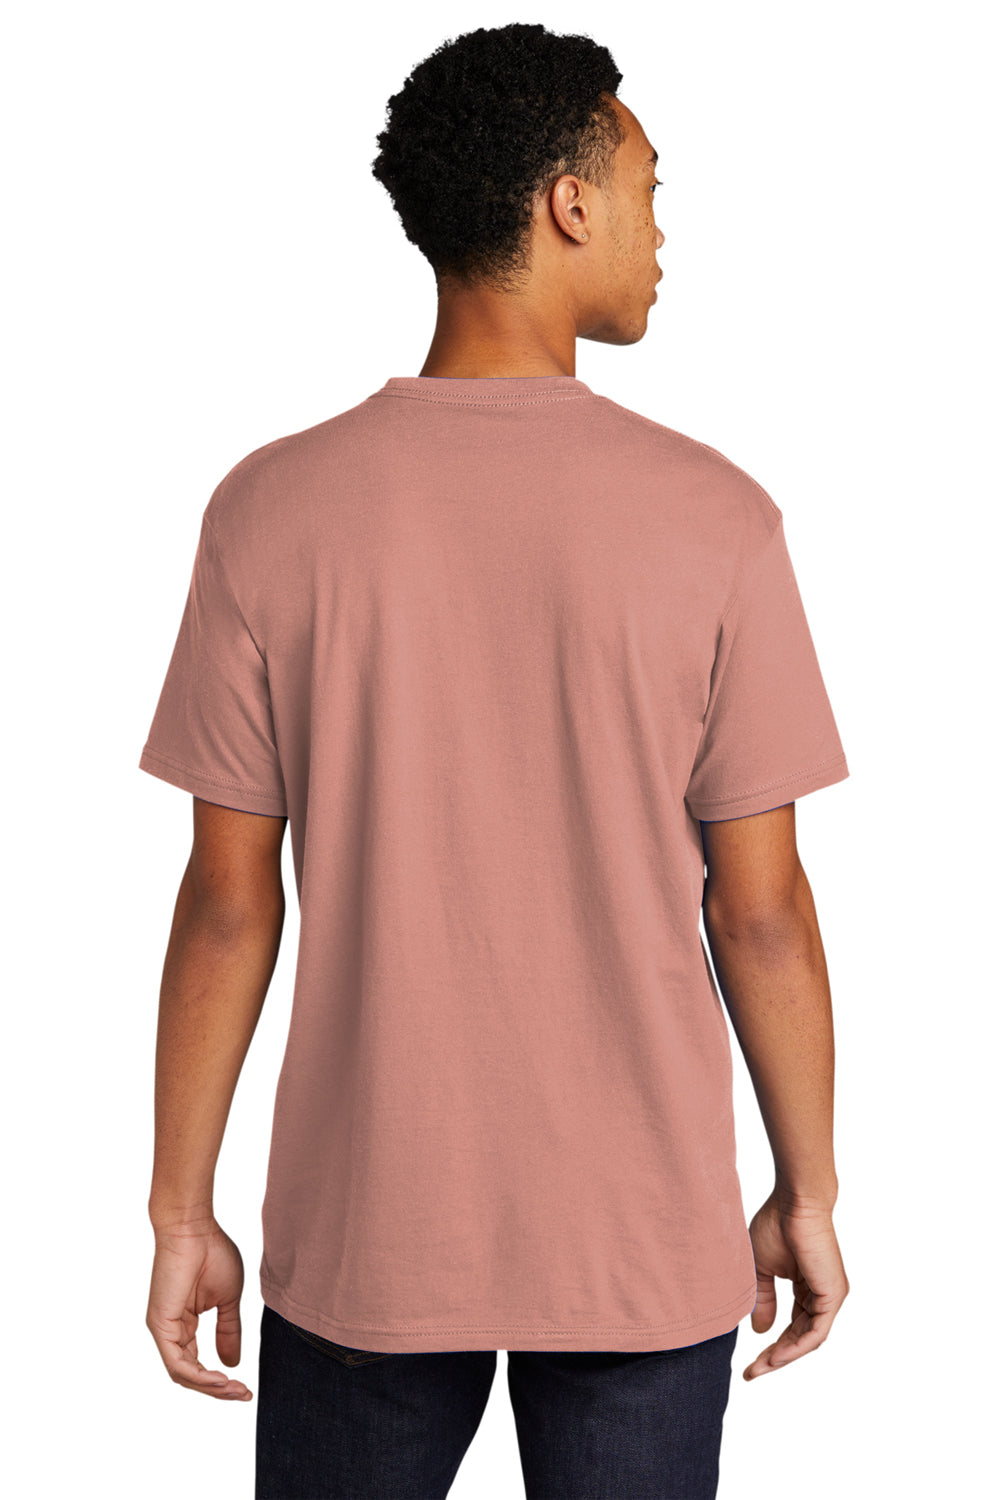 Next Level NL3600/3600 Mens Fine Jersey Short Sleeve Crewneck T-Shirt Desert Pink Back